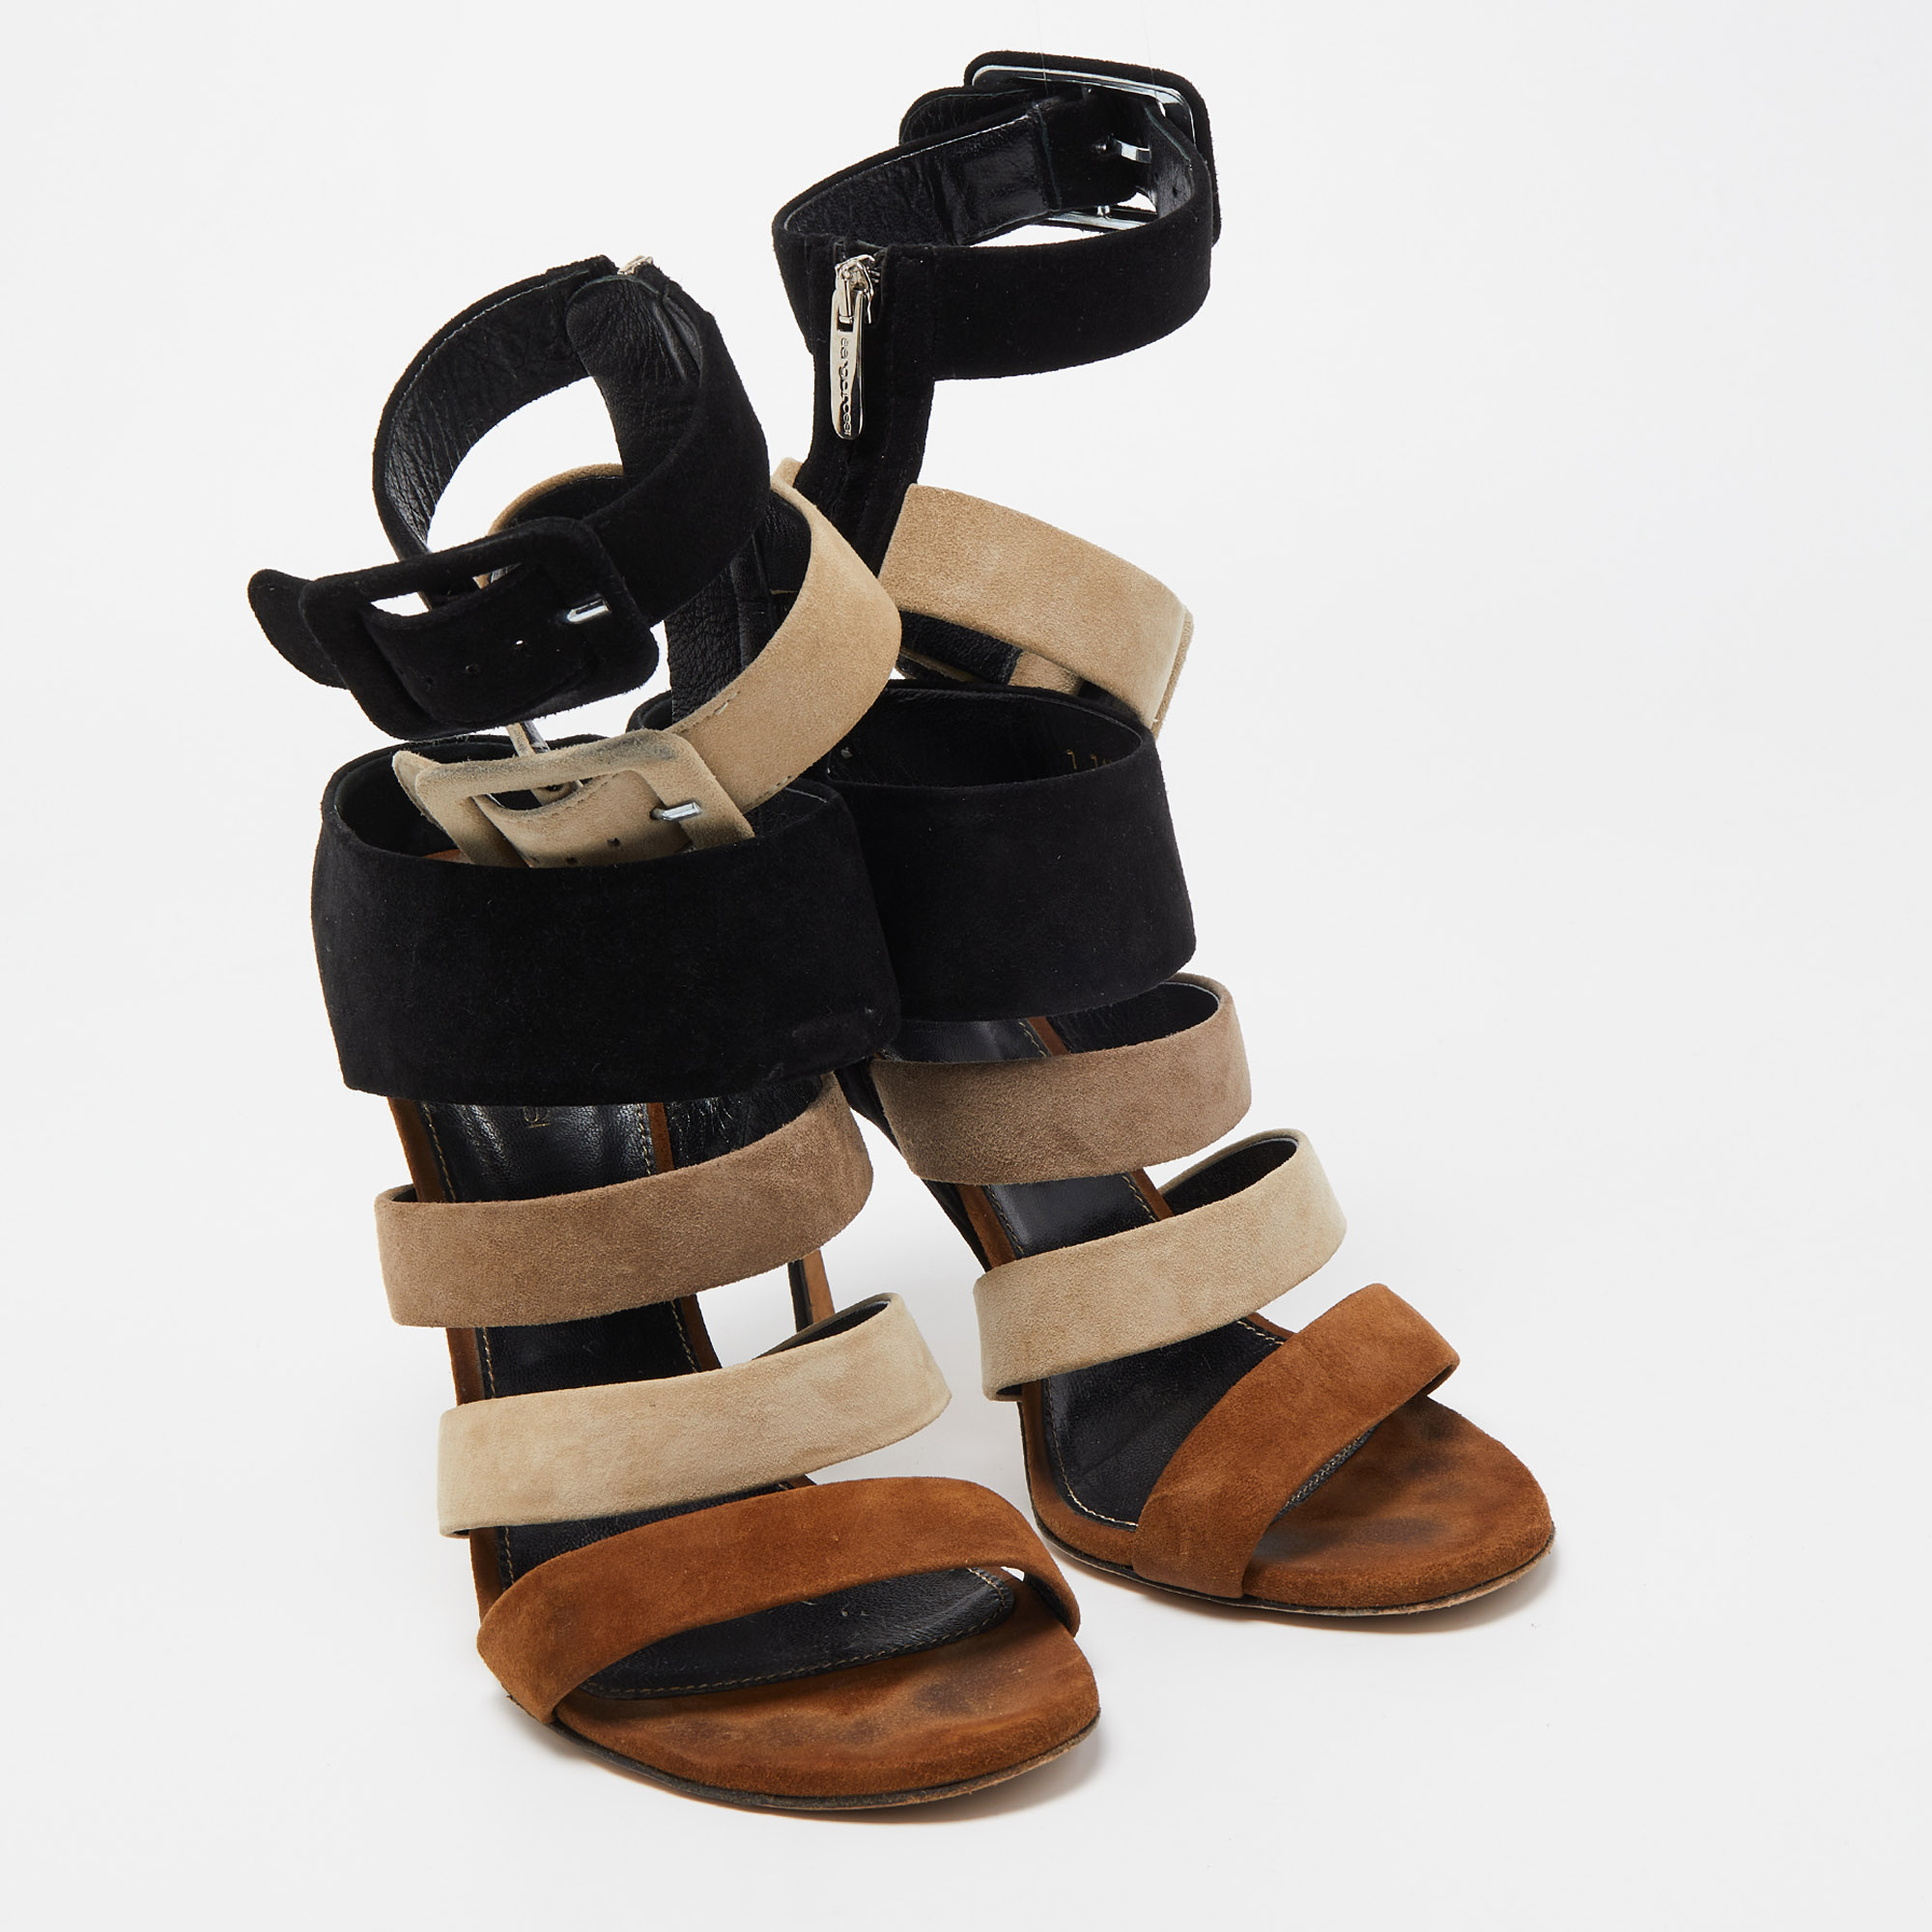 Sergio Rossi Tricolor Suede Strappy Sandals Size 40